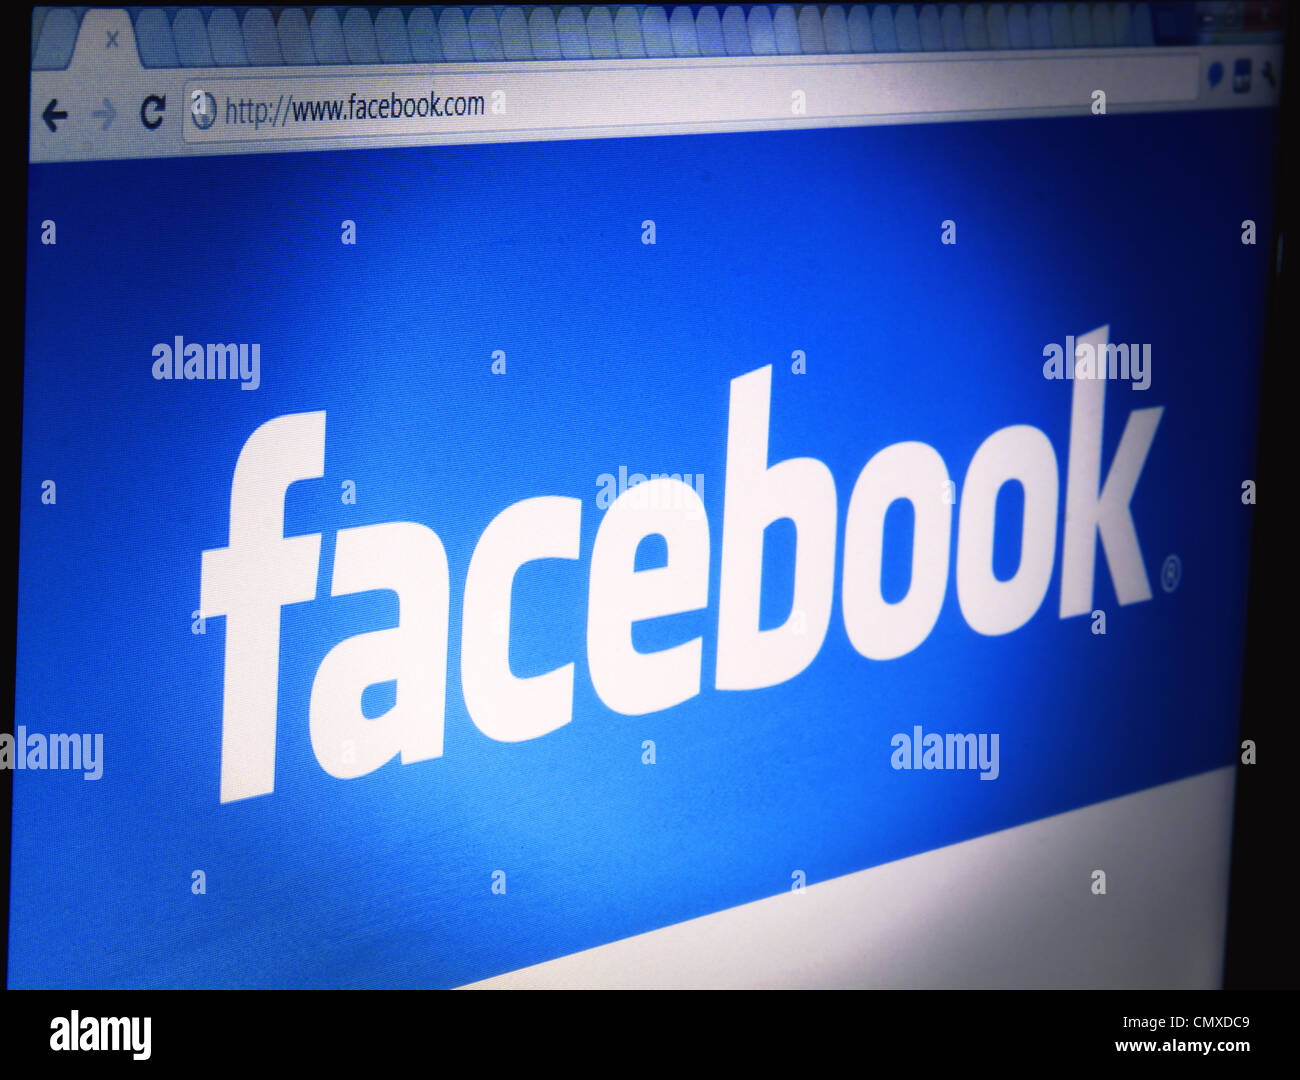 Eine Nahaufnahme von einem LCD-Bildschirm zeigt die Facebook-Webseite-Logo auf den ursprünglichen blauen Hintergrund. Stockfoto